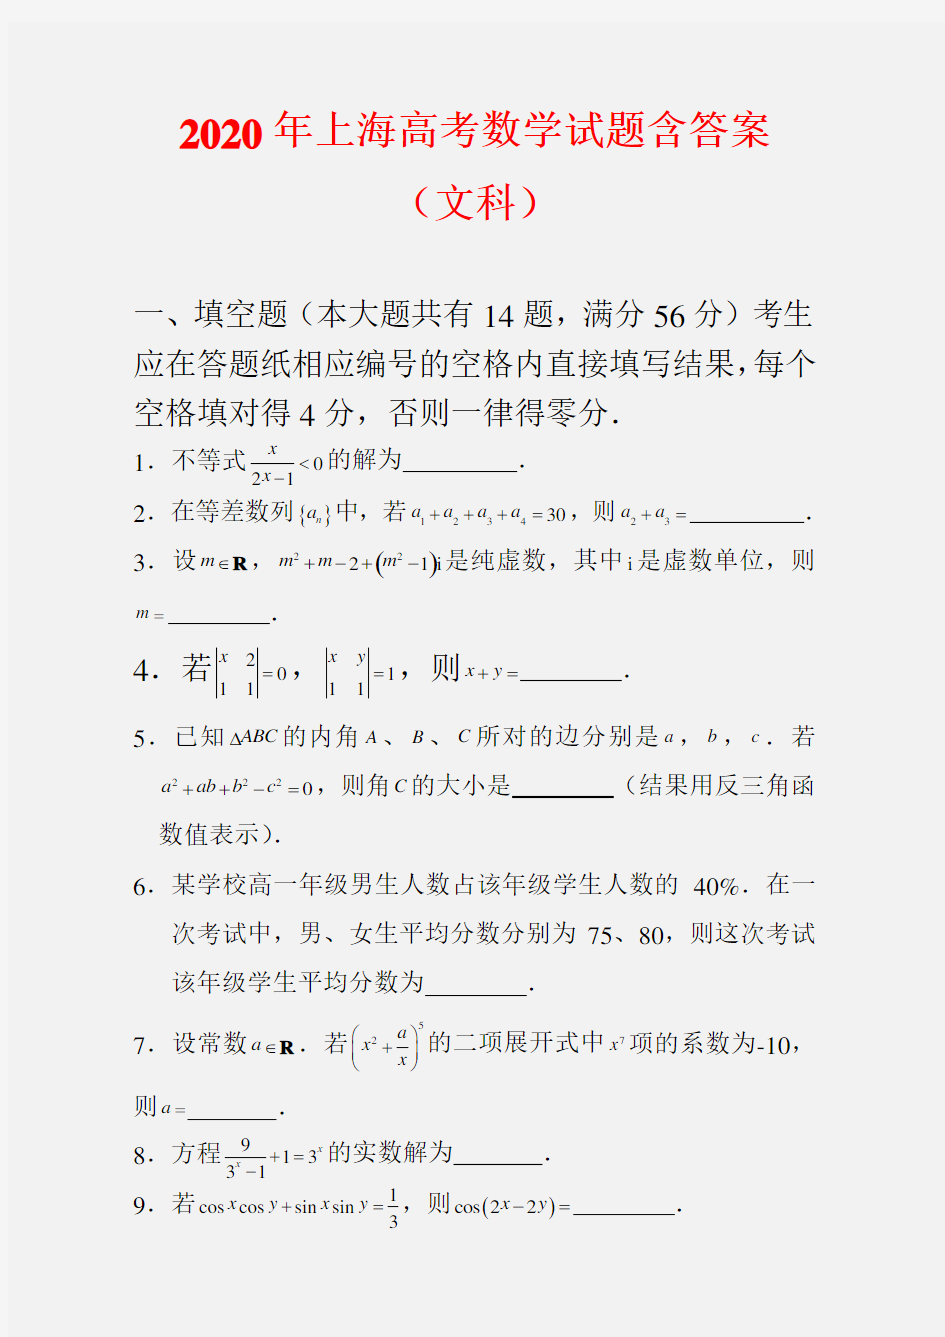 2020年上海高考数学试题(文科)